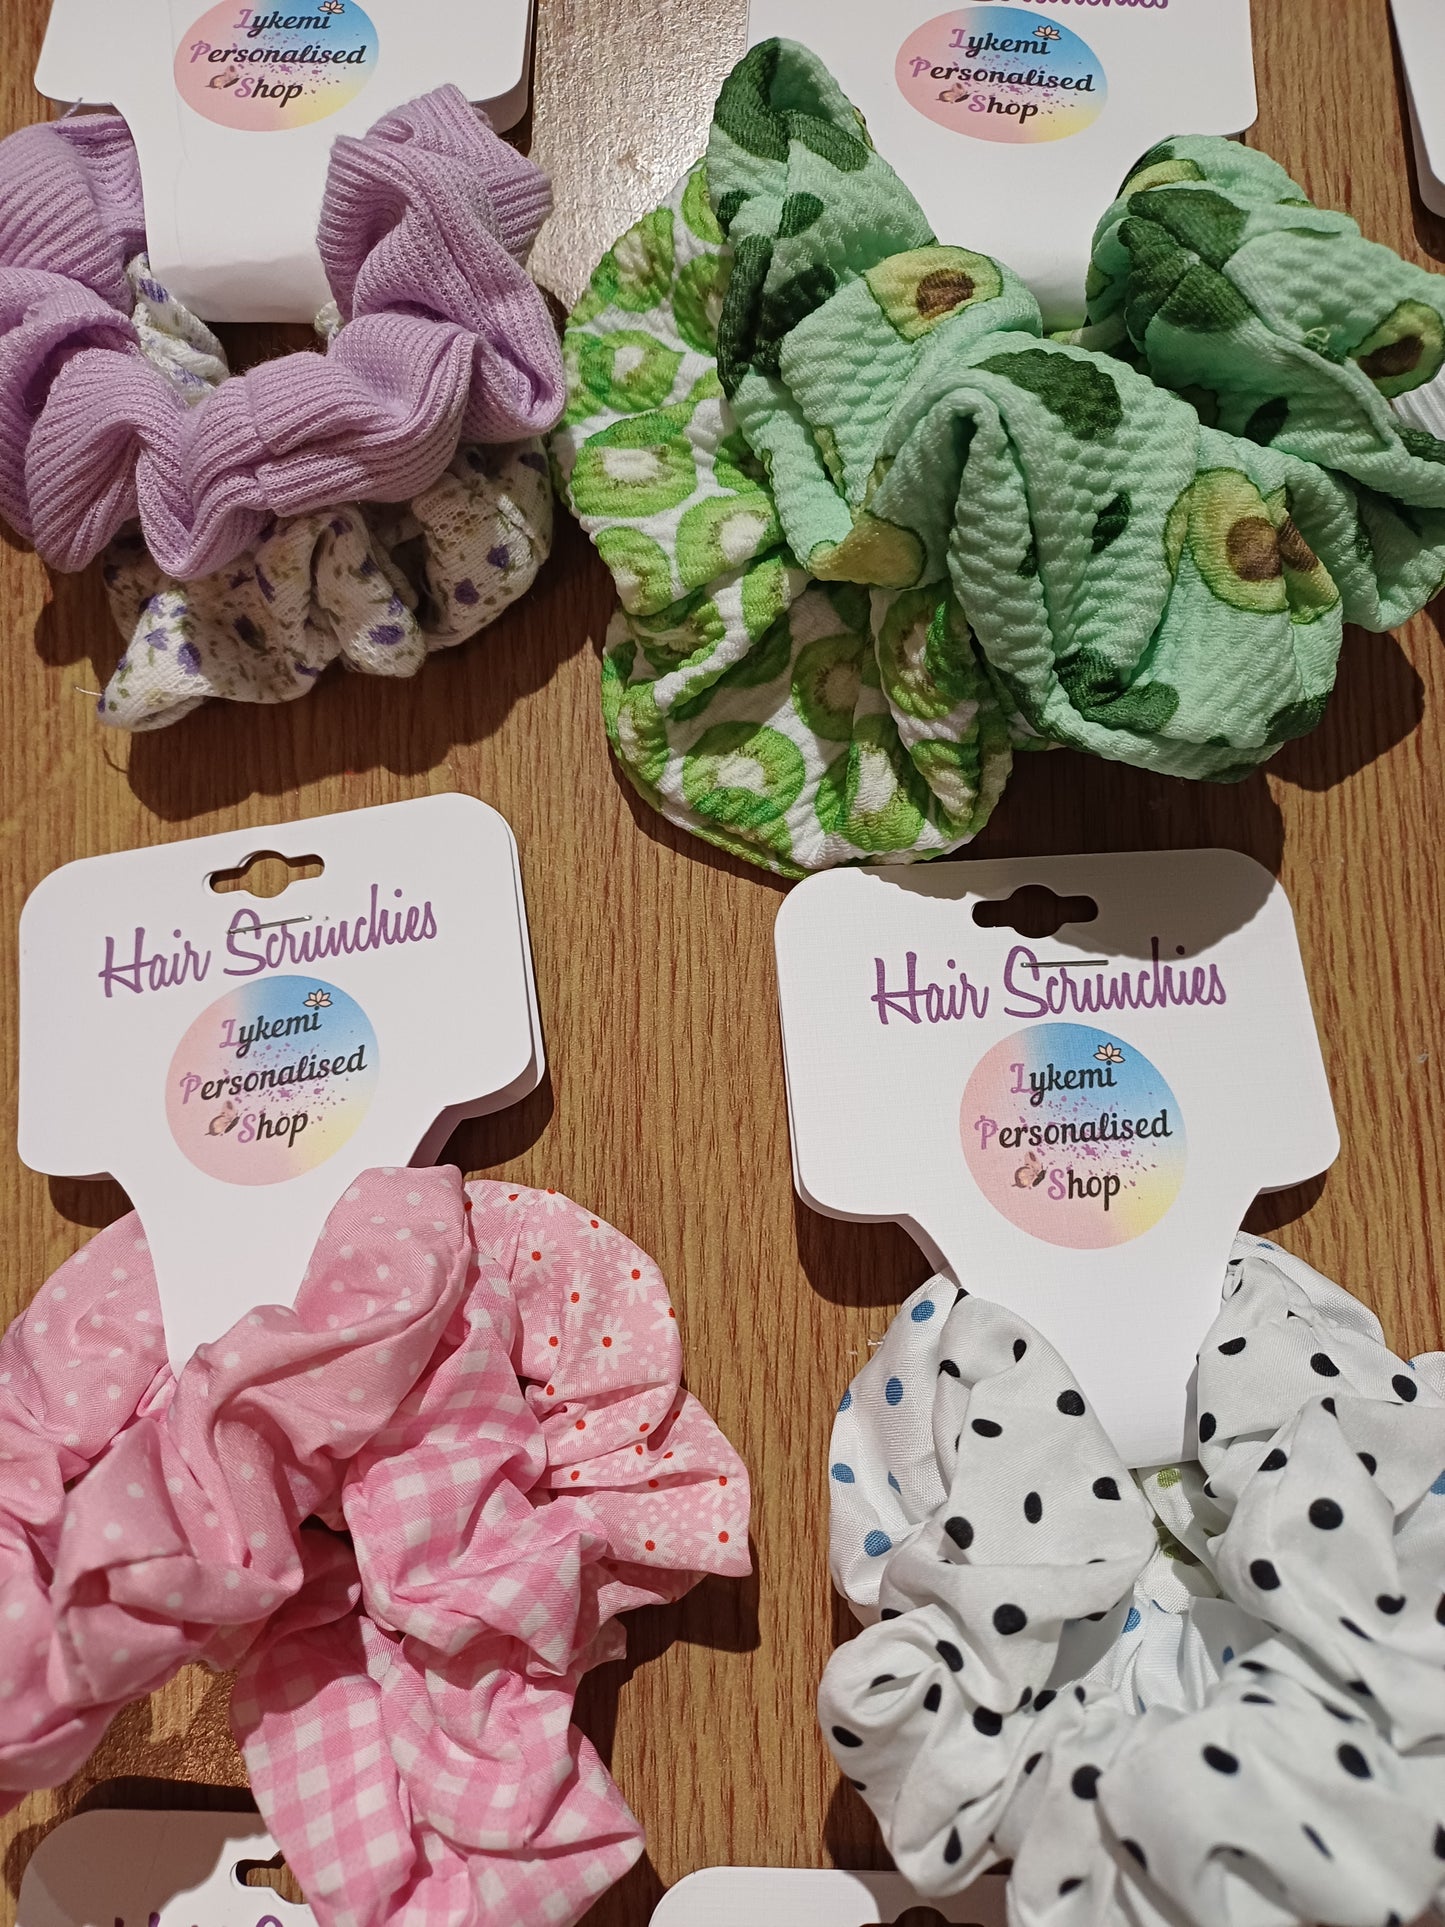 Handmade Hair Scrunchies